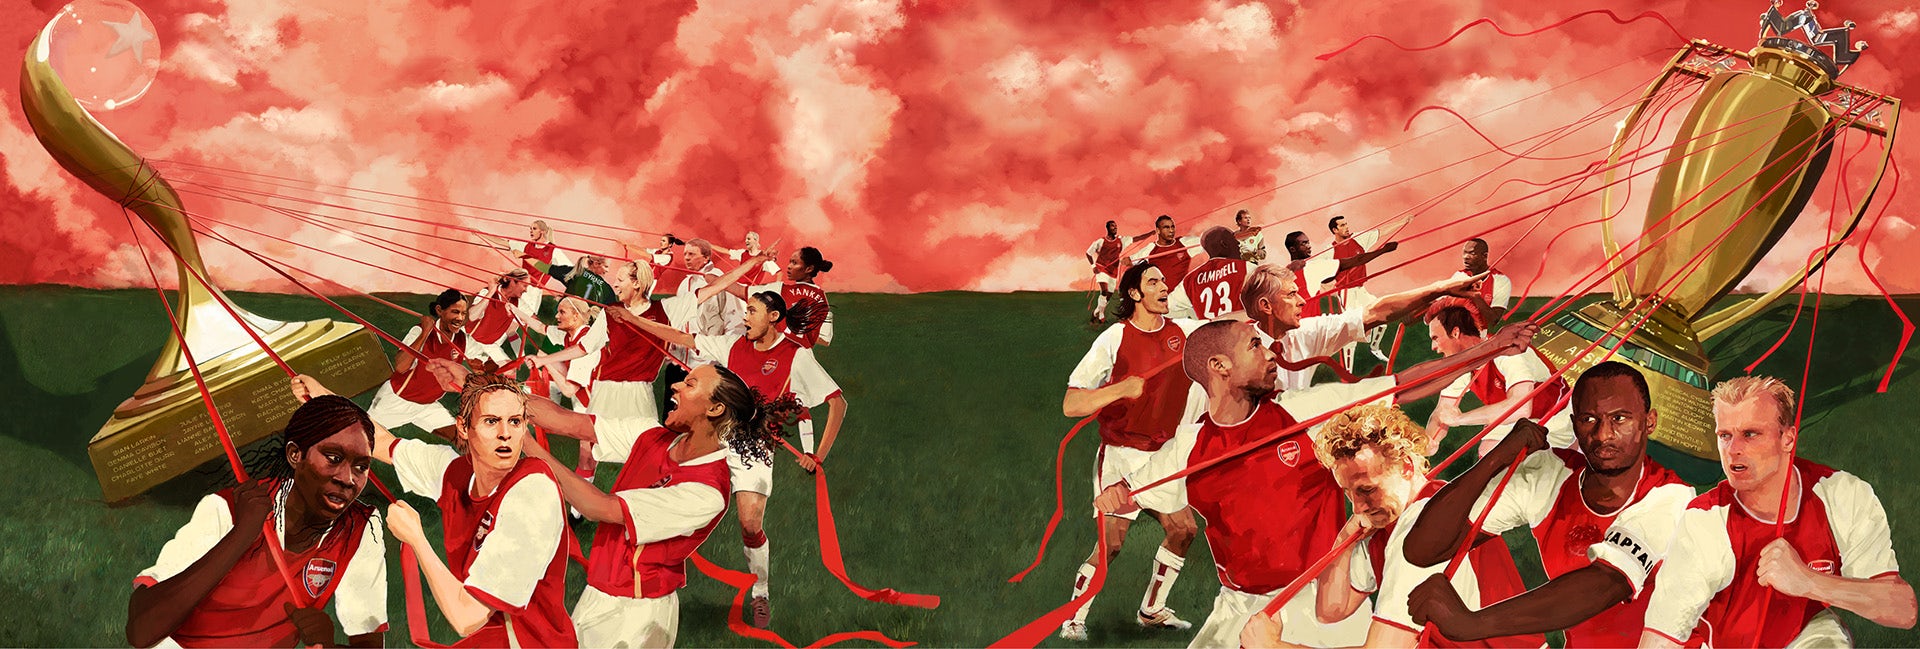 Obra de Reuben Dangoor con ilustraciones de jugadores del Arsenal de la historia del club que llevan trofeos en cuerdas.